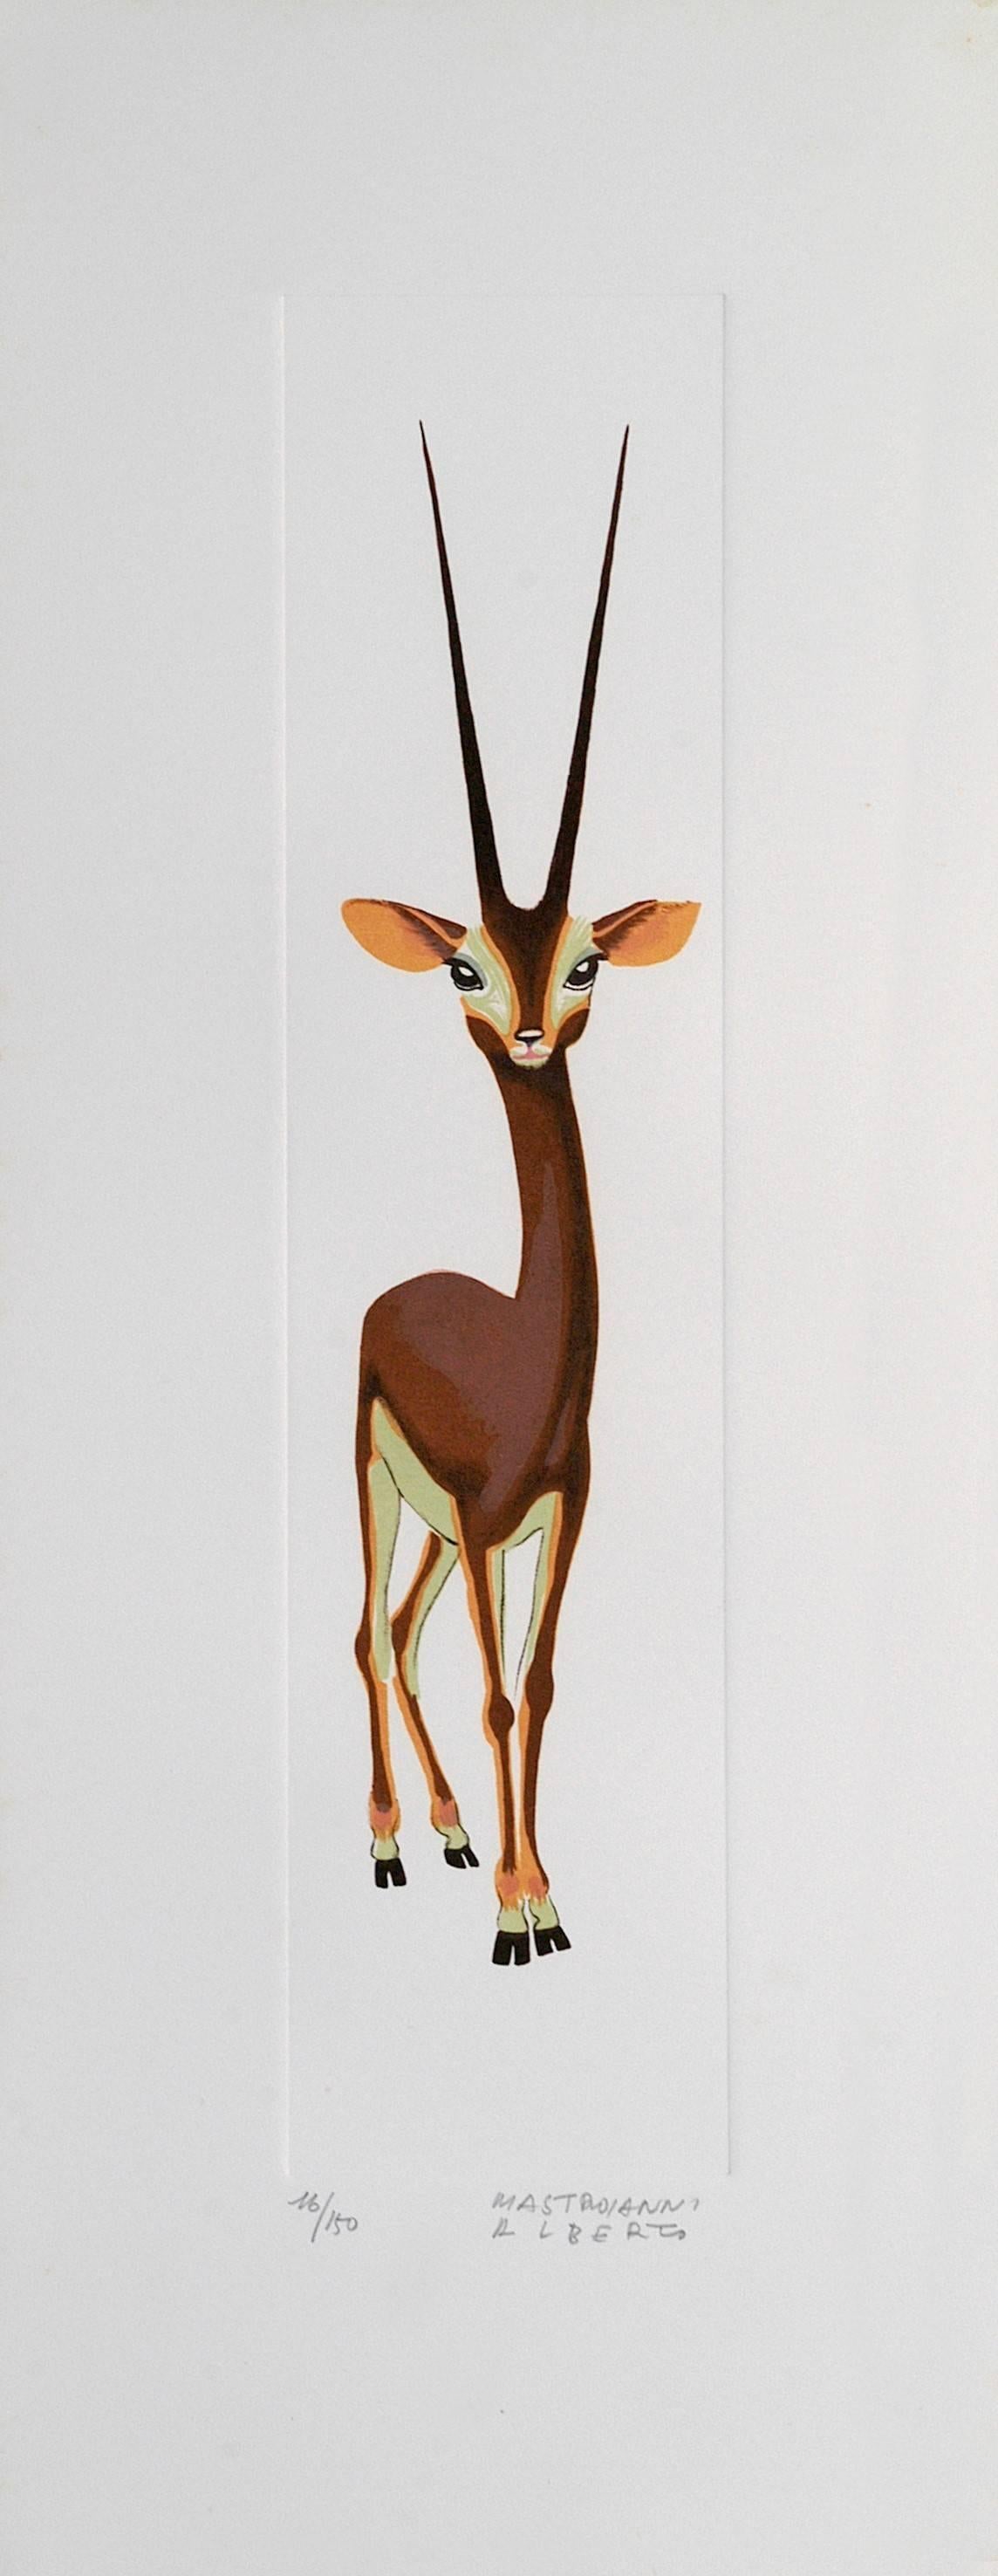 Alberto Mastroianni Figurative Print - Gazelle - Lithograph by A. Mastroianni - 1970s